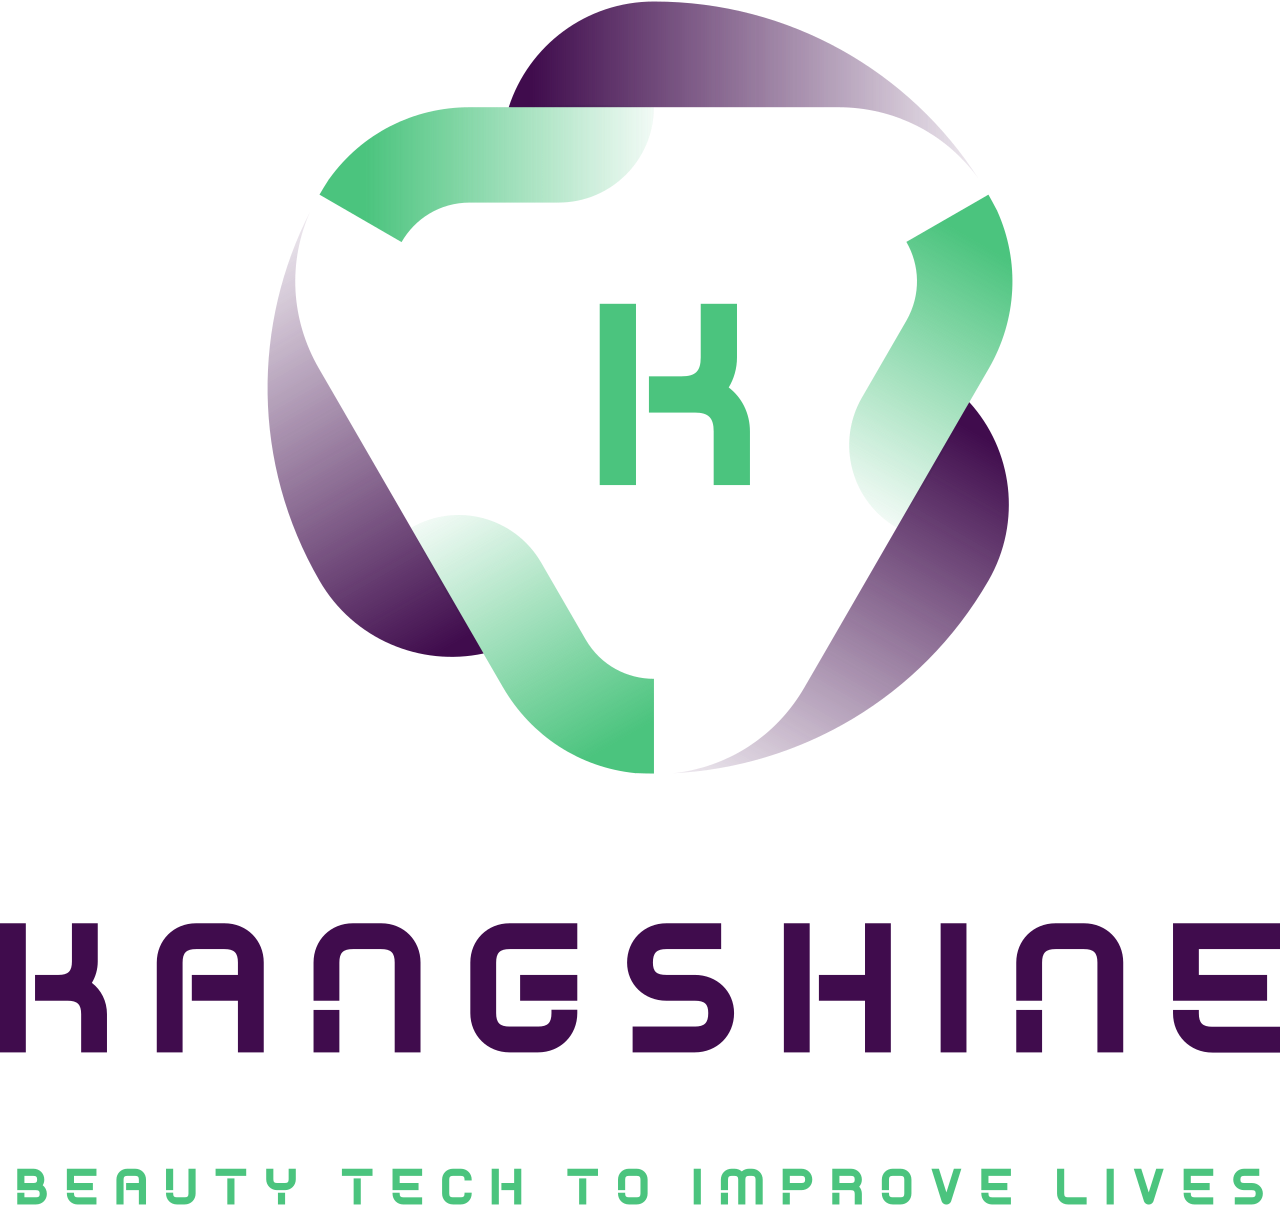 Kangshine's logo